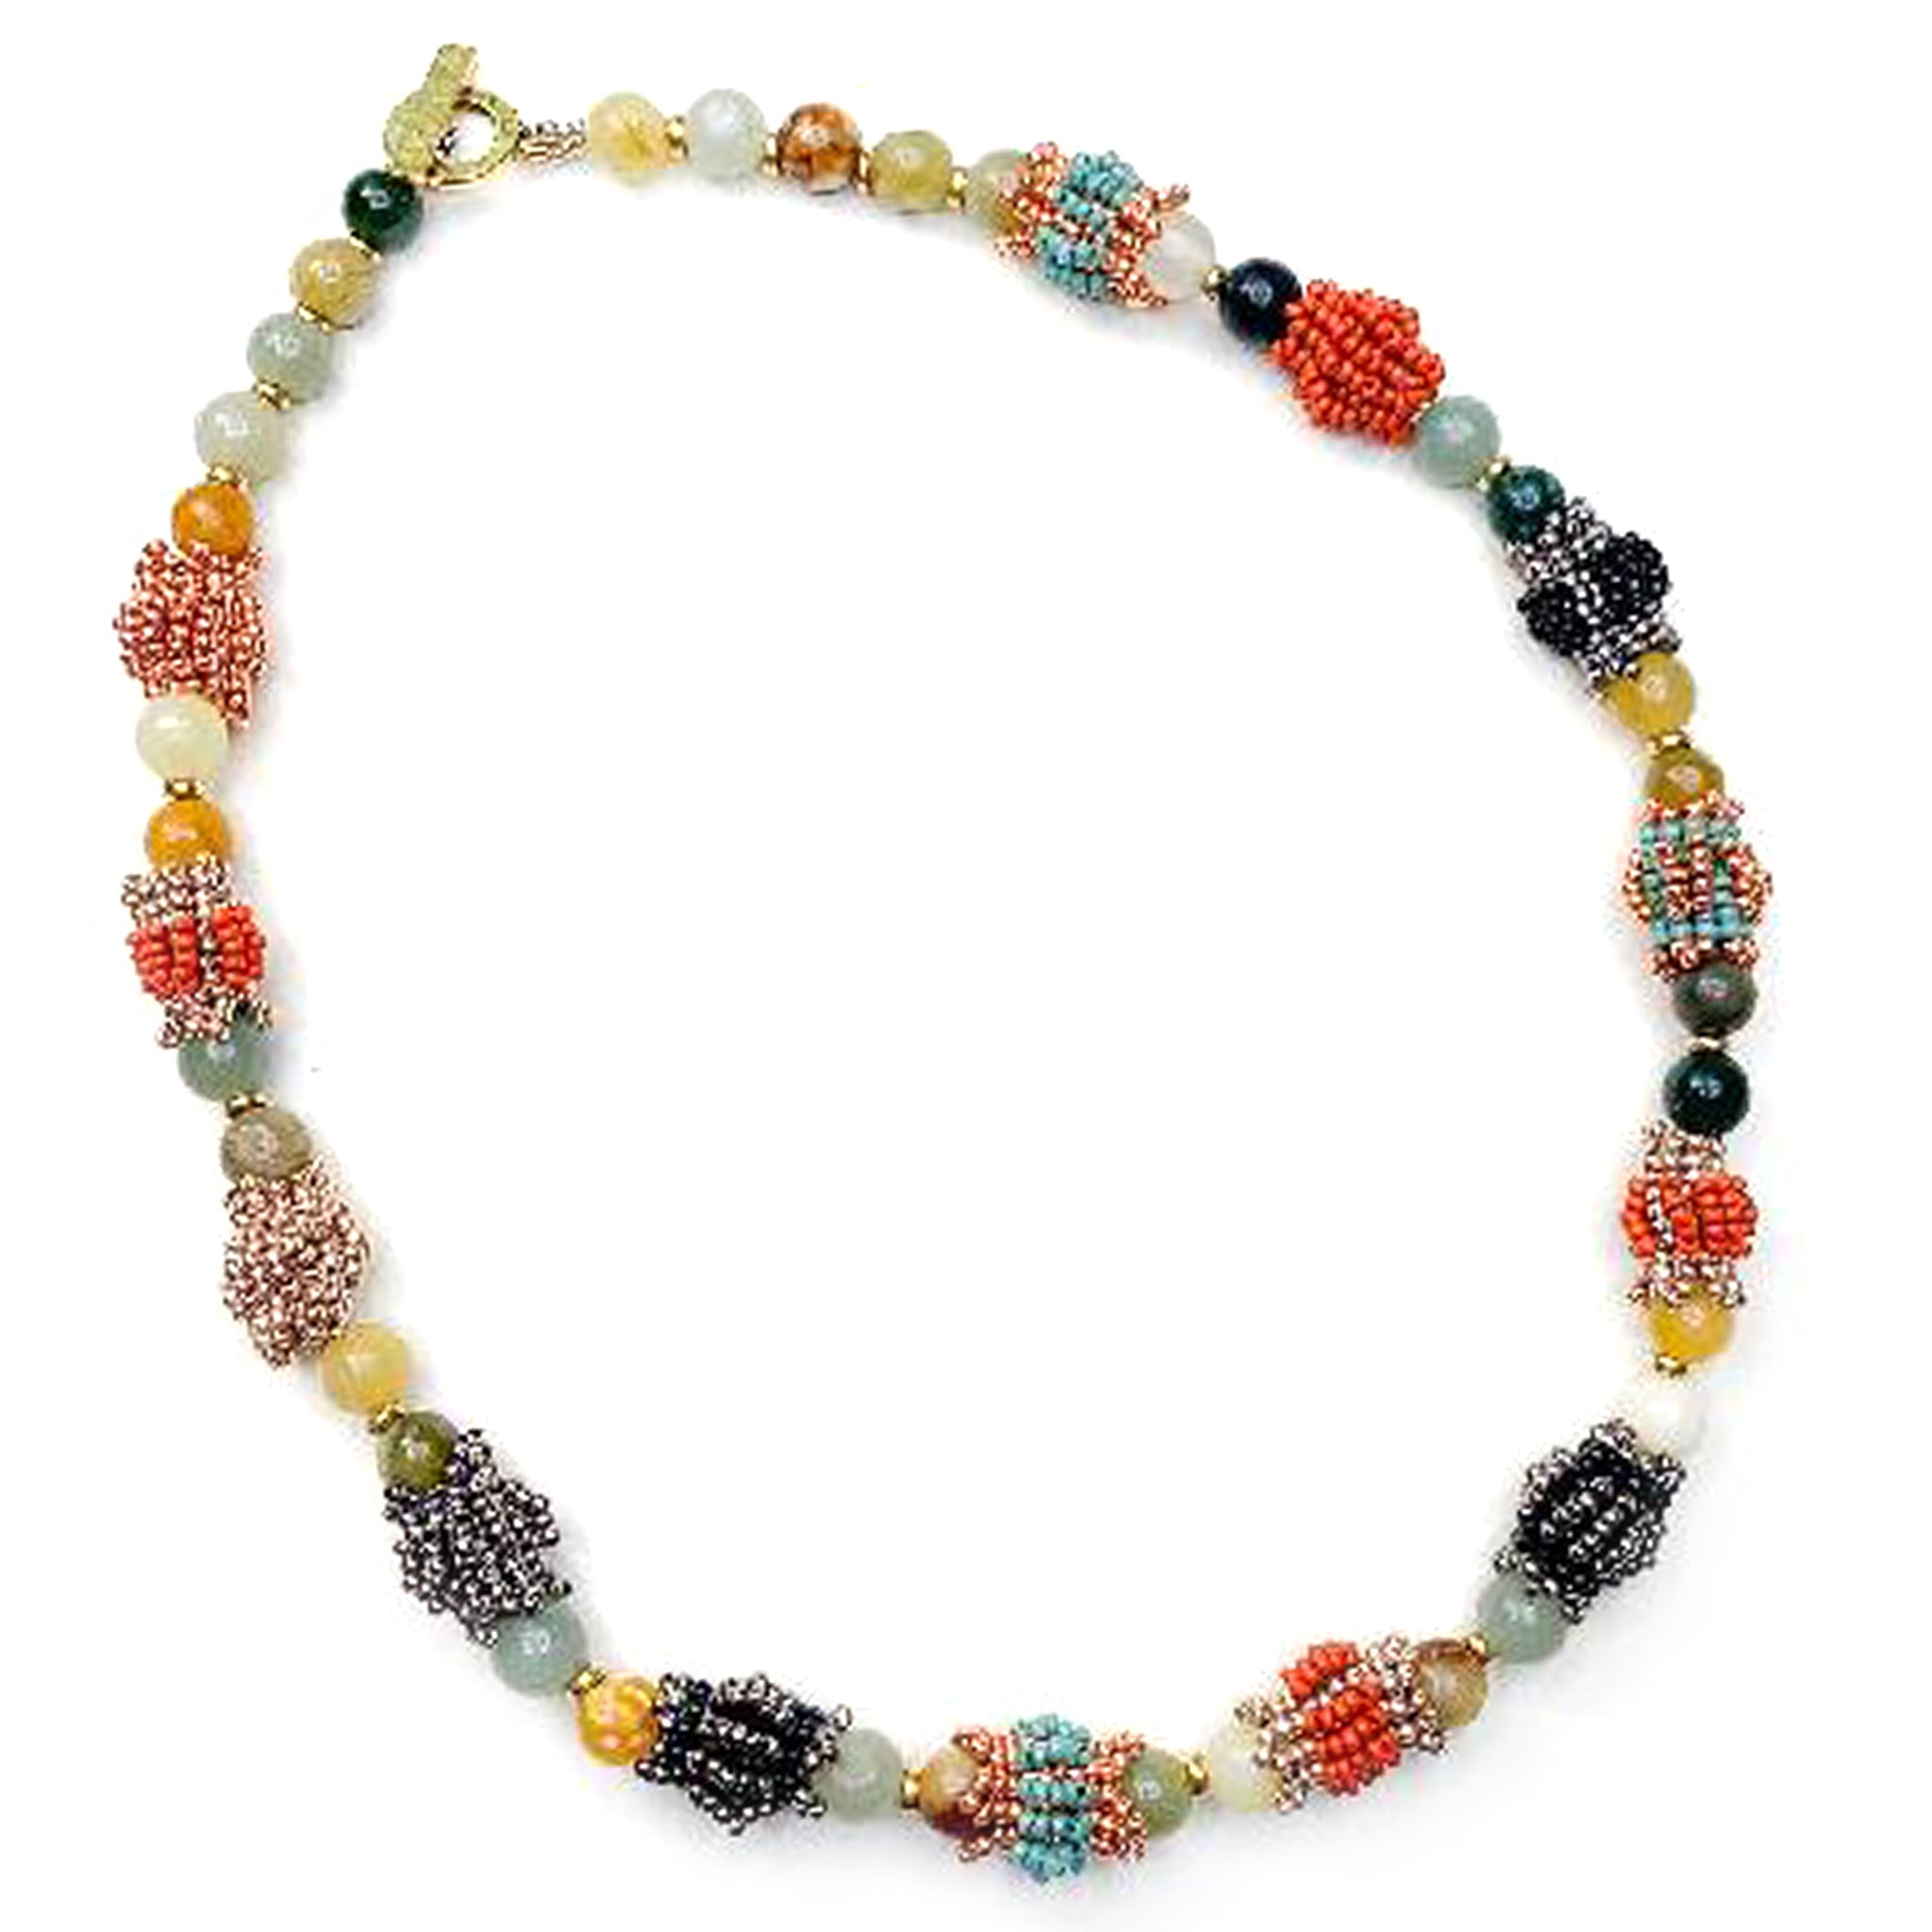 Peyote Inlay Beads